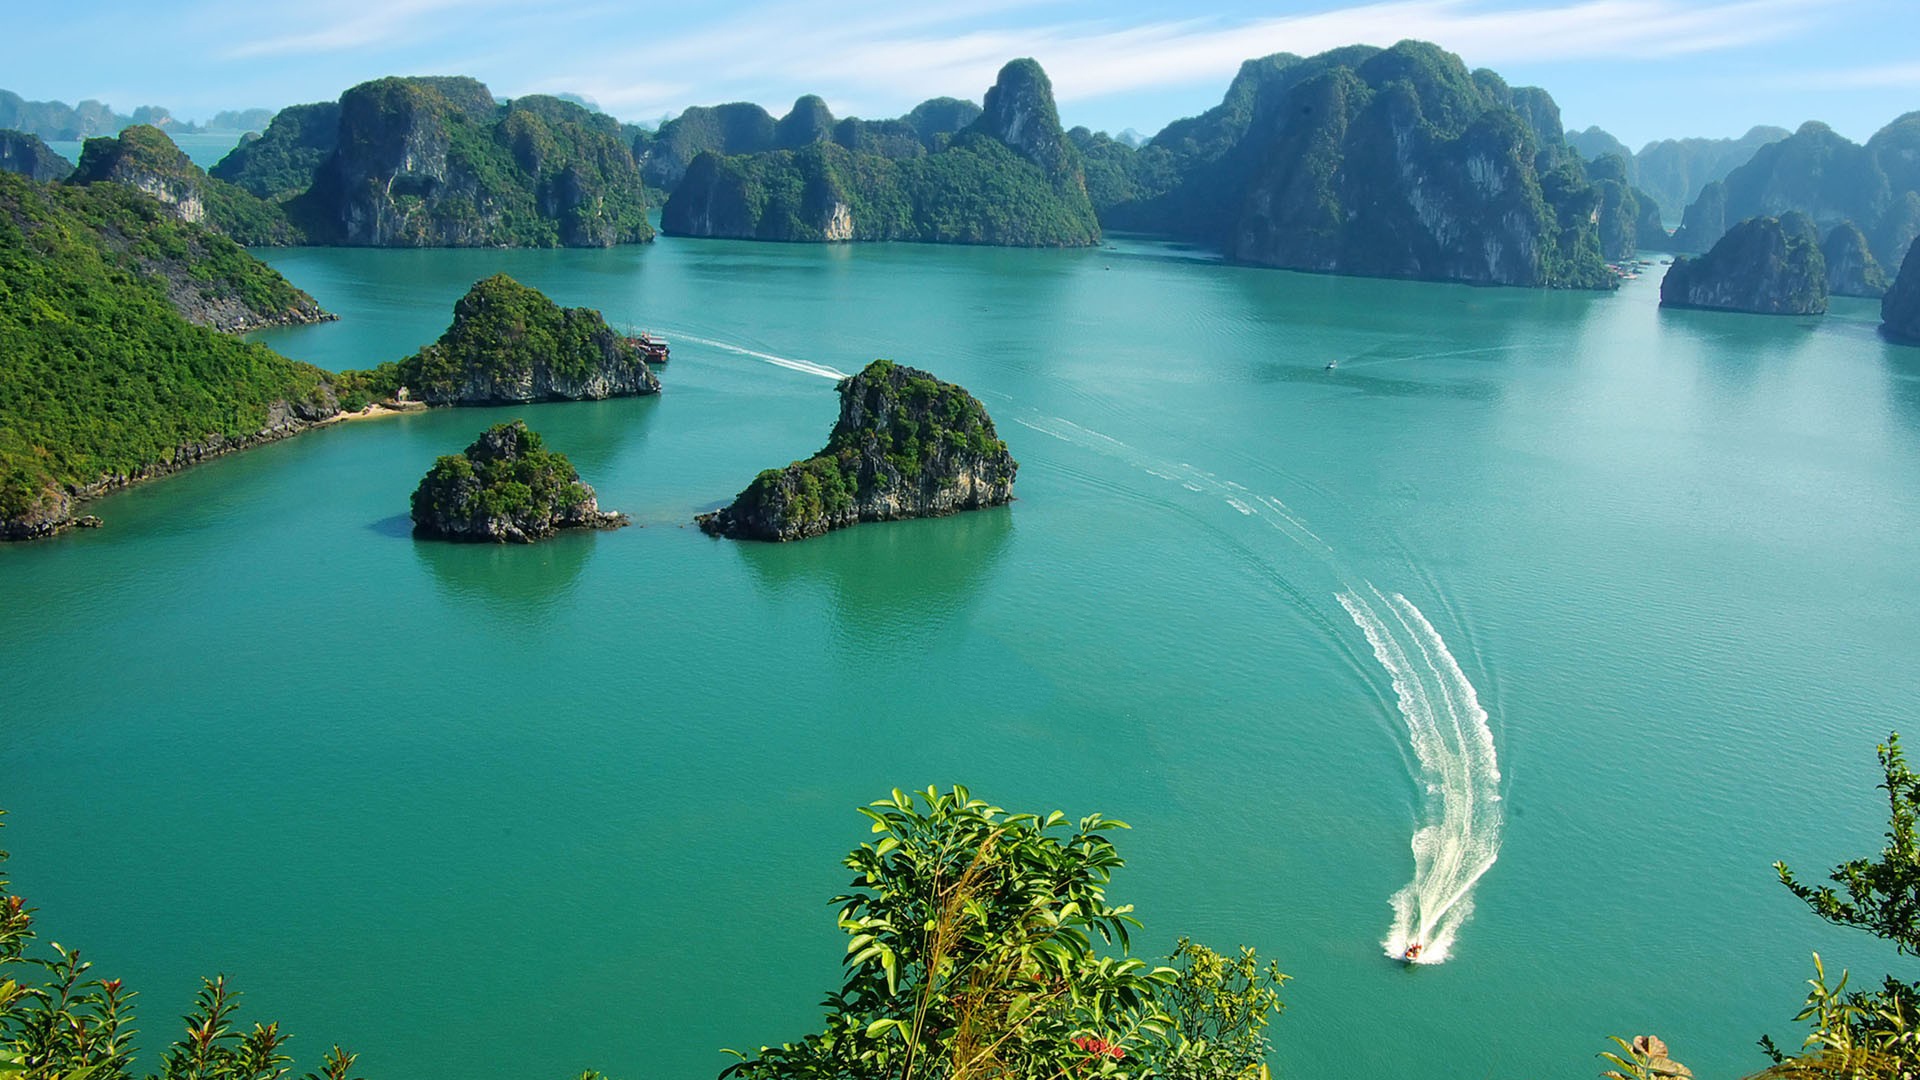 Du lịch miền bắc trọn gói cung cấp chương trình tour du lịch miền bắc đầy đủ nhất cho du khách là người Sài Gòn, Việt Kiều hoặc khách nước ngoài.